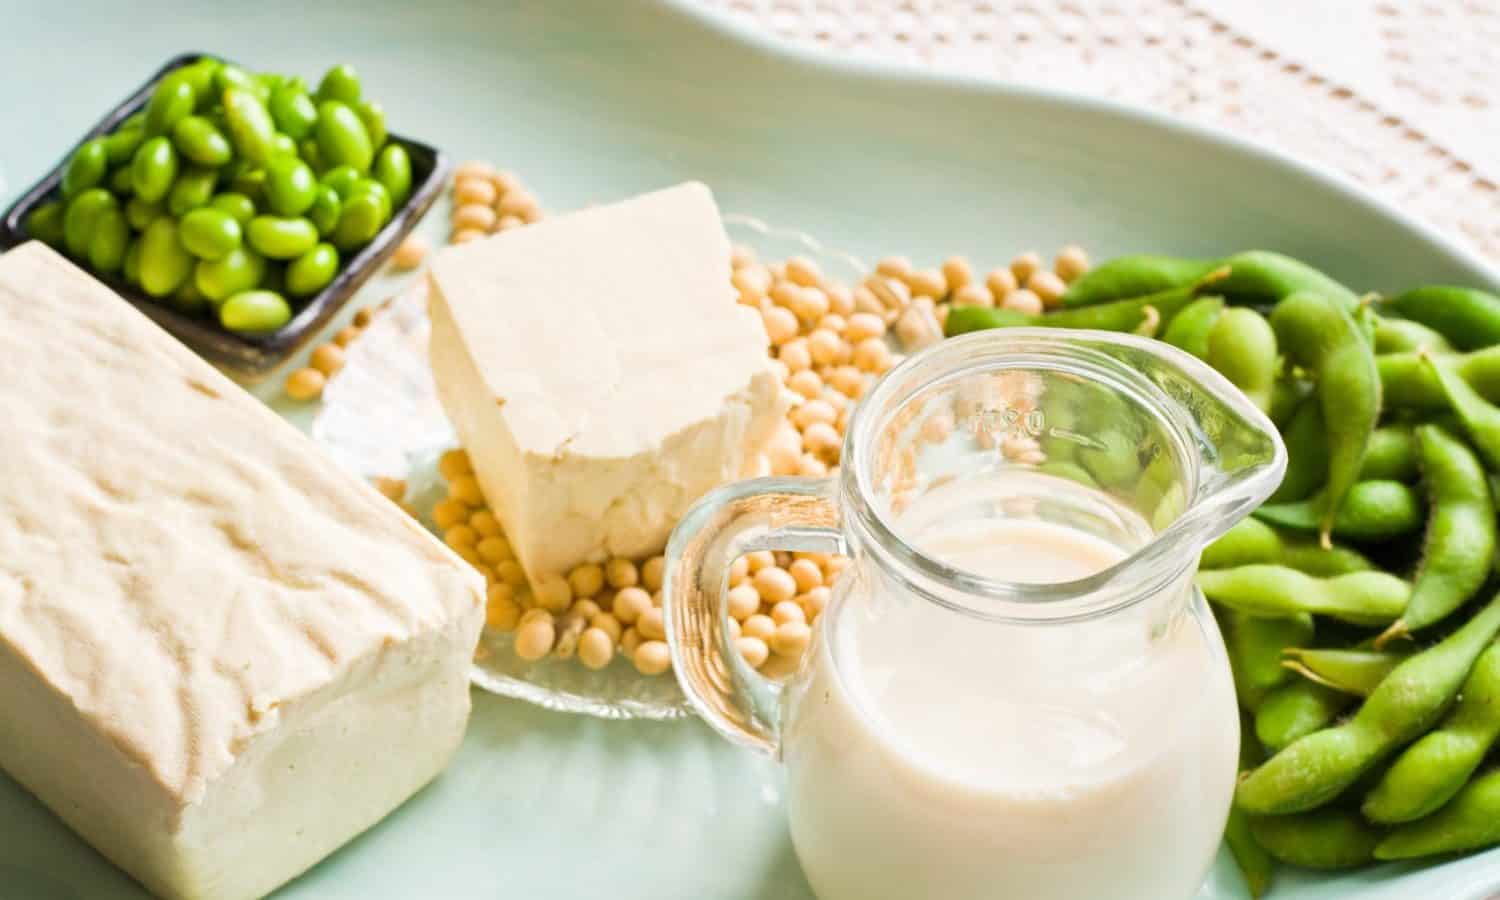 植物性食品组织的联合反对“乳制品骄傲法案”,将禁止标签市面上产品乳制品像牛奶